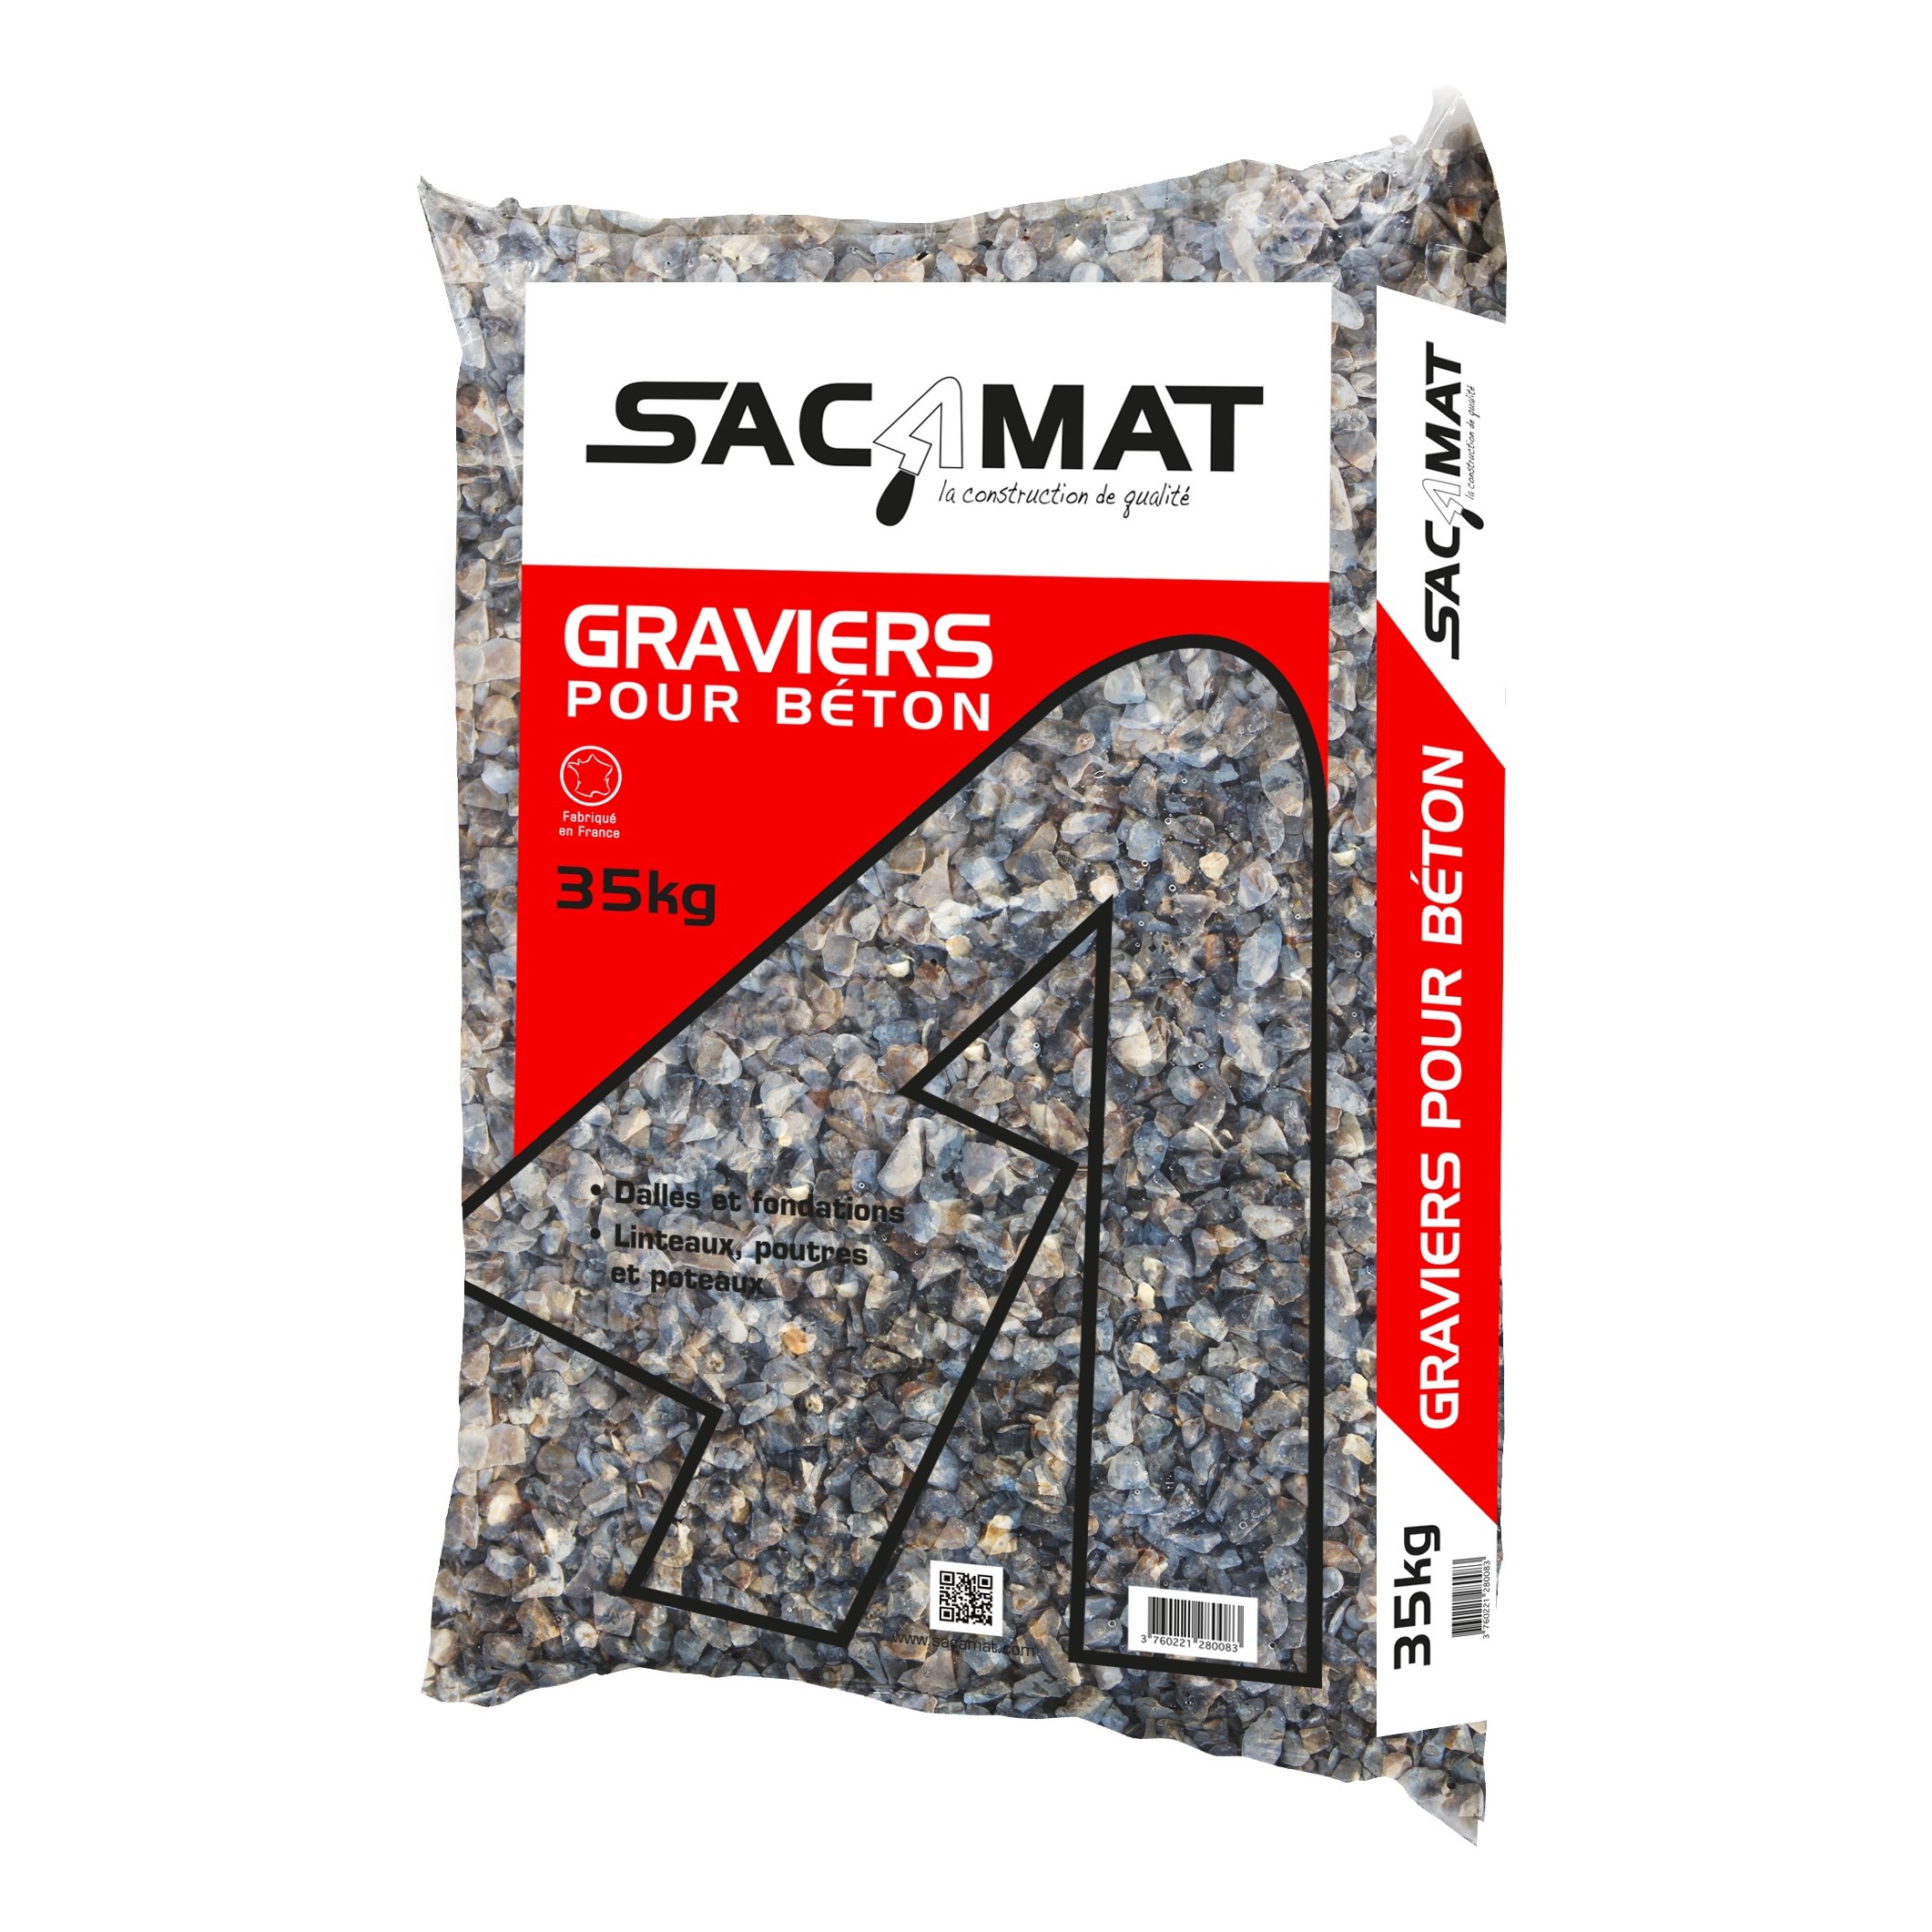 SACAMAT - Graviers pour béton - gris - sac de 35kg